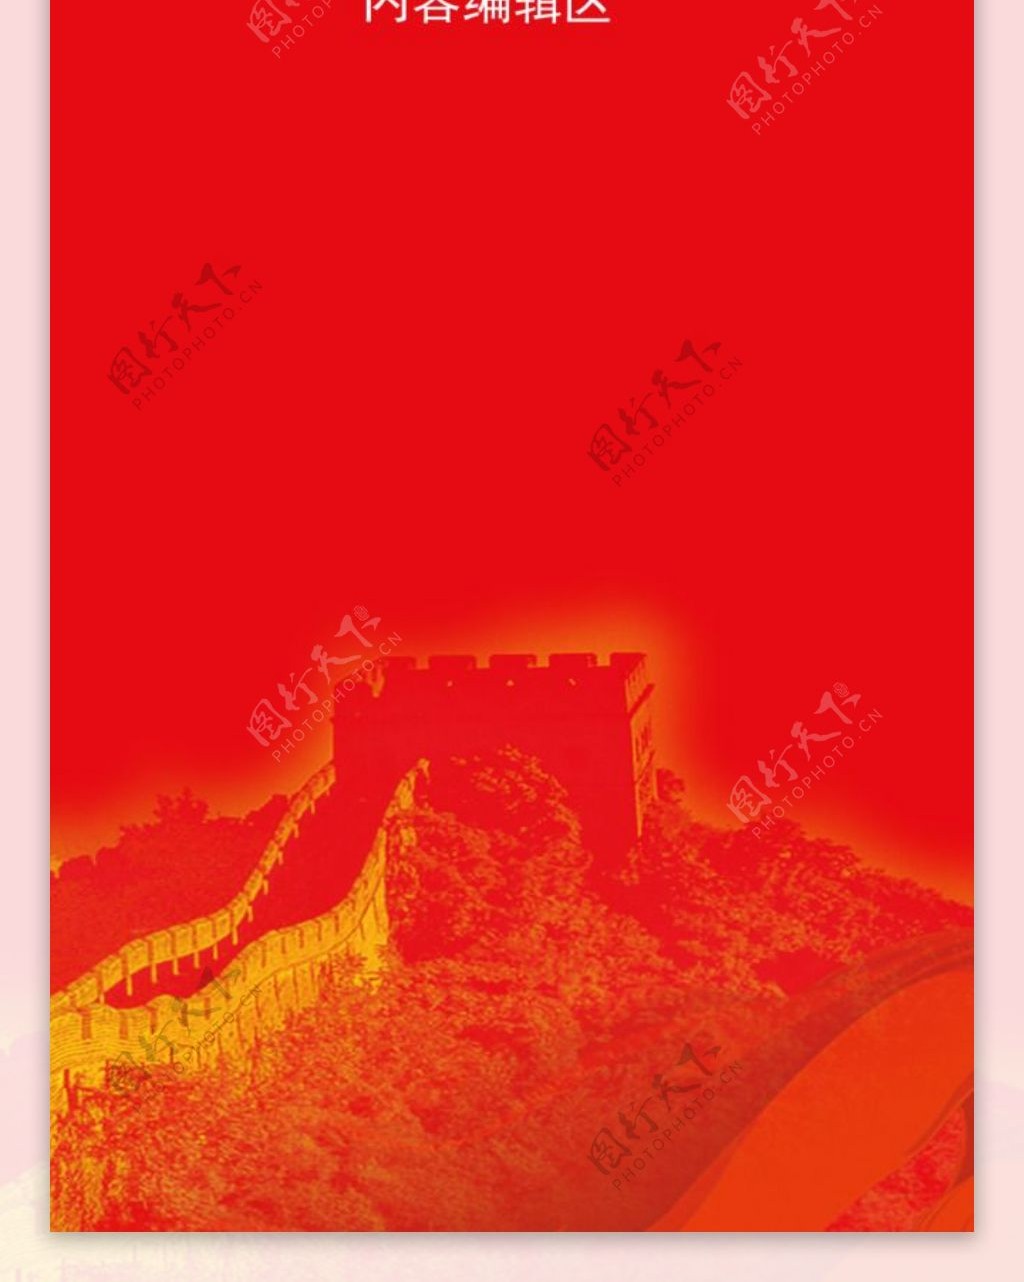 精美红色背景展架设计模板素材画面海报